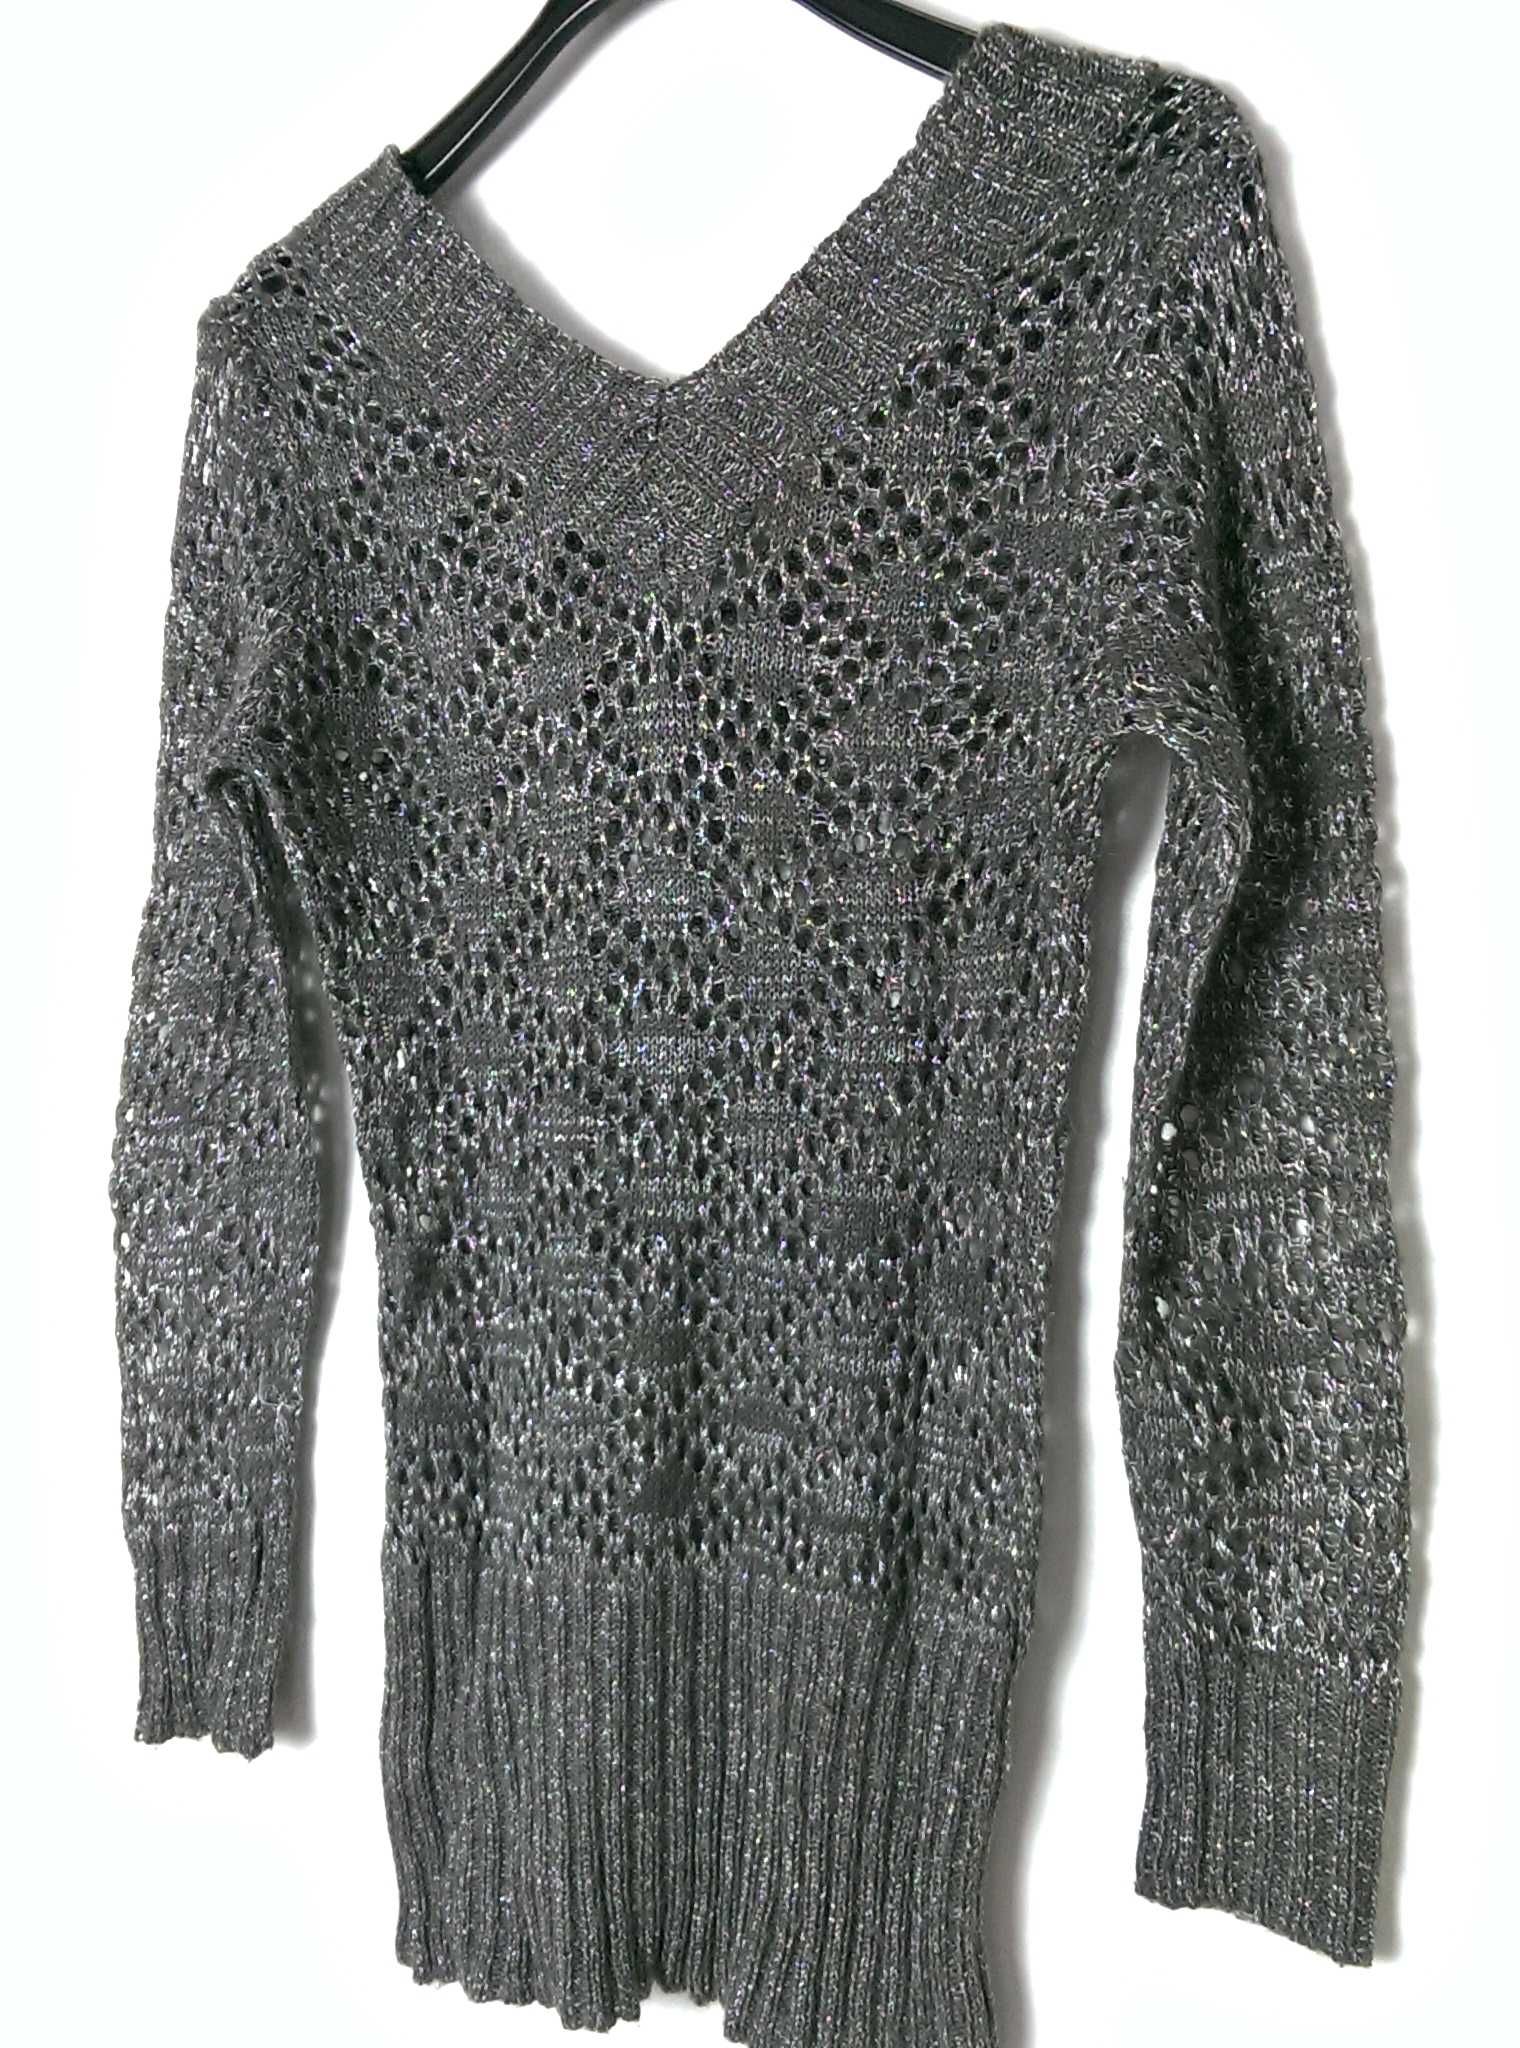 Tunika sweter ażurowy długi rękaw szary srebrny dekolt połysk